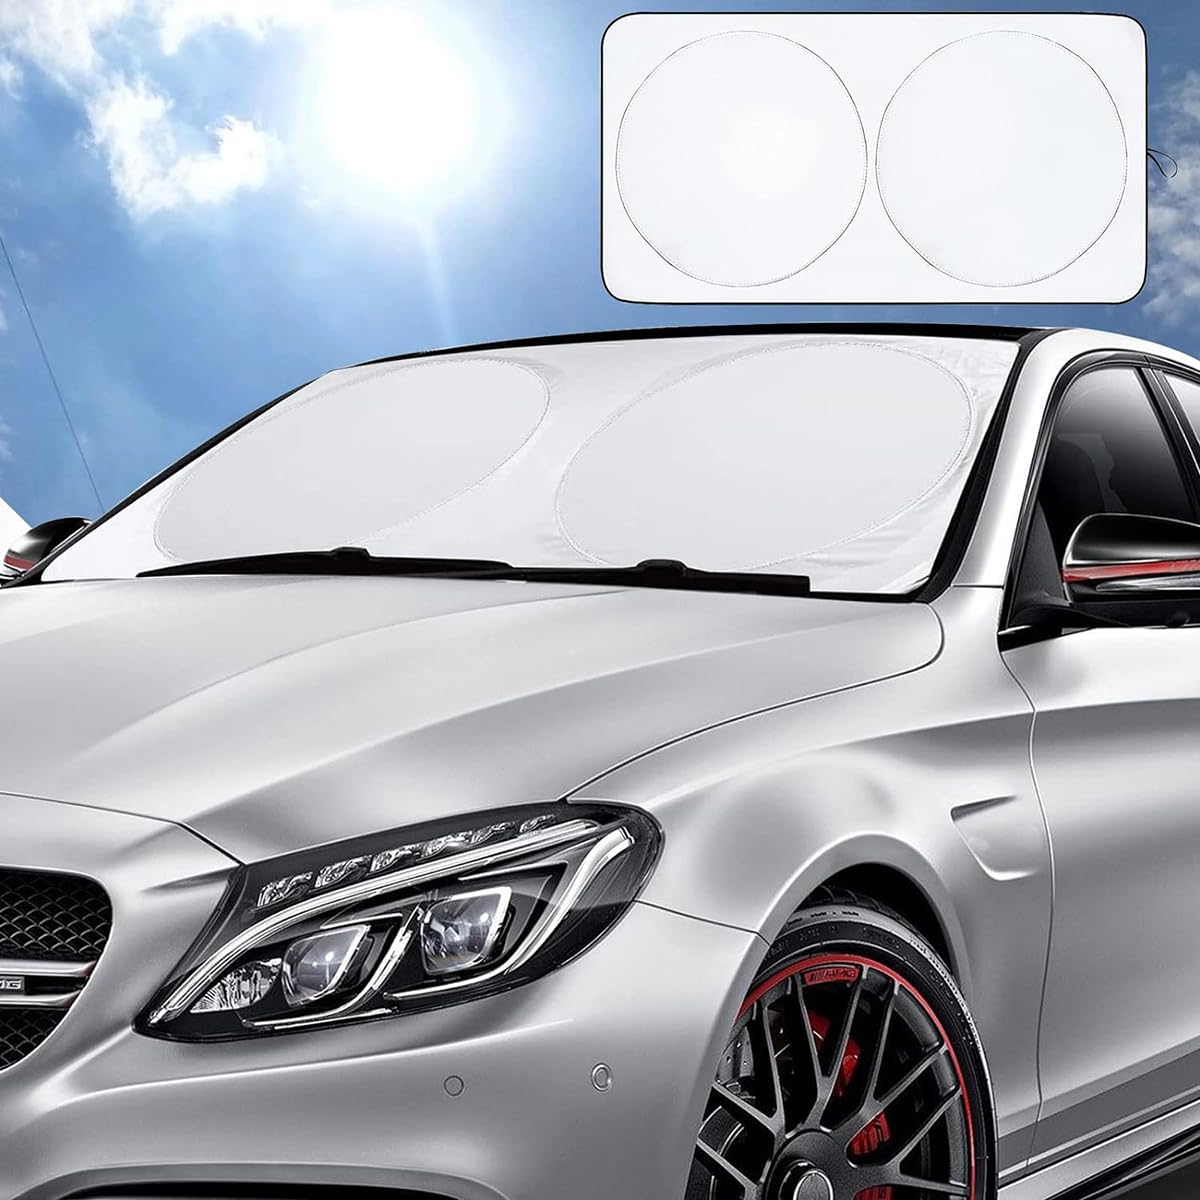 Auto Sonnenschutz Frontscheibe für Mercedes-Benz ML-Class W166 2012-2015, Wasser Staubschutz Robuste Frontscheibenabdeckung Auto-Innendekoration,B/Silver von Bangquan